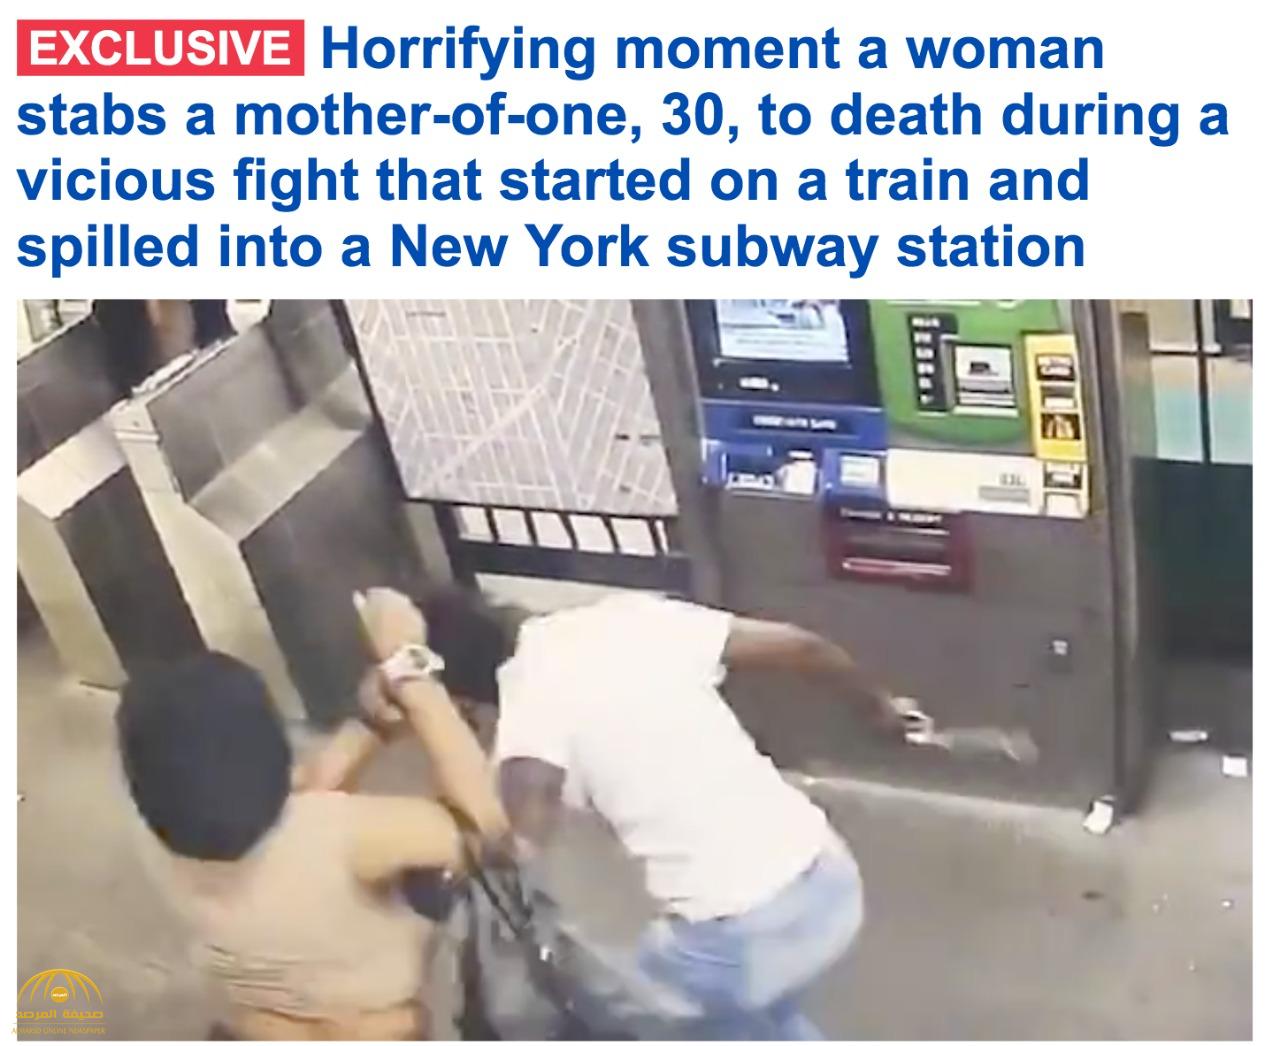 خلال مشاجرة عنيفة .. شاهد : امرأة تسدد طعنات قاتلة لأخرى في محطة مترو بنيويورك